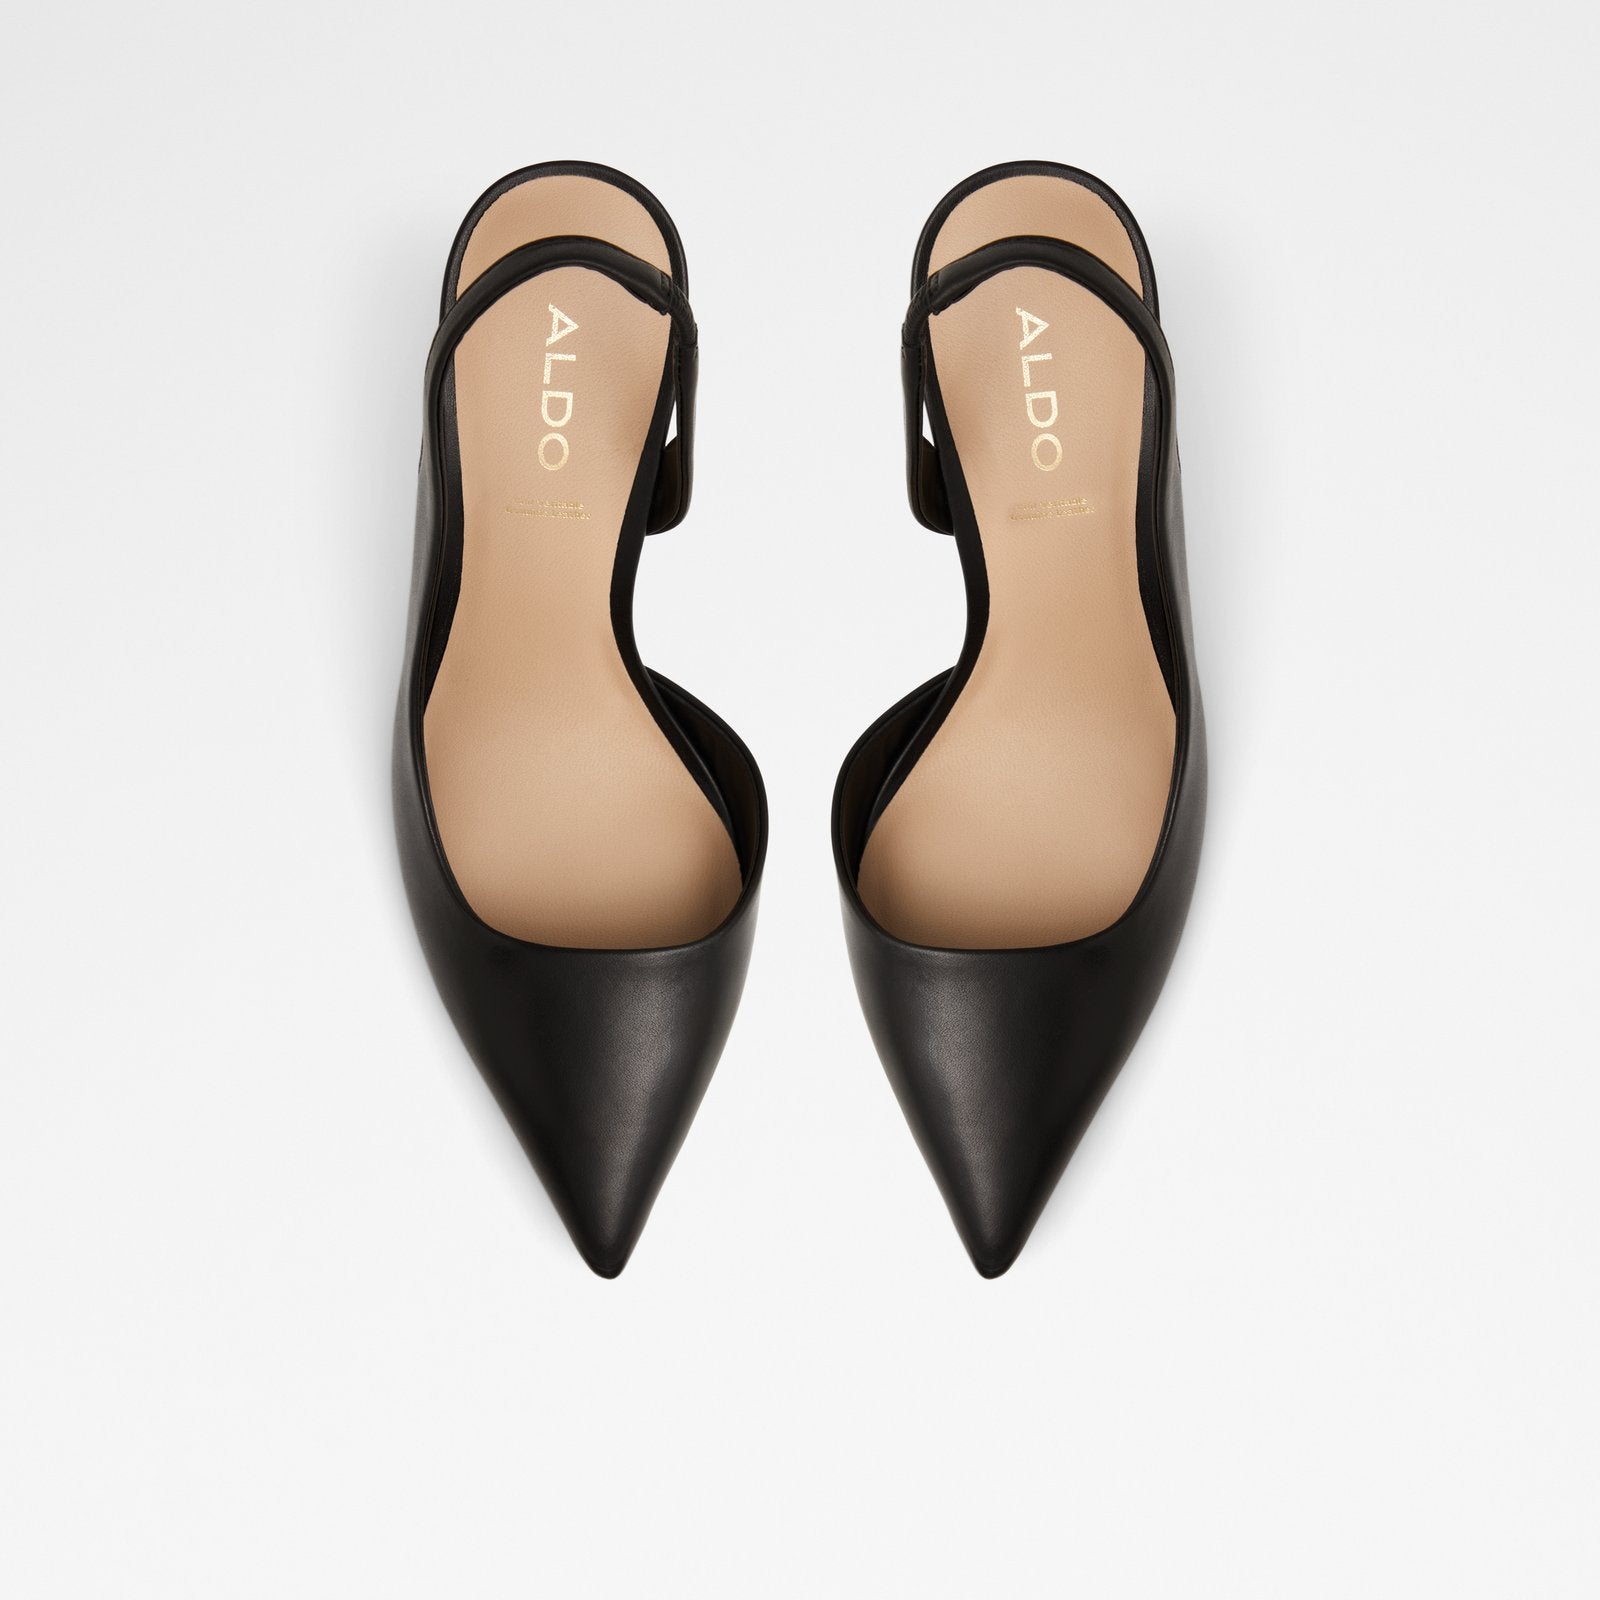 Loucette Women Shoes - Black - ALDO KSA